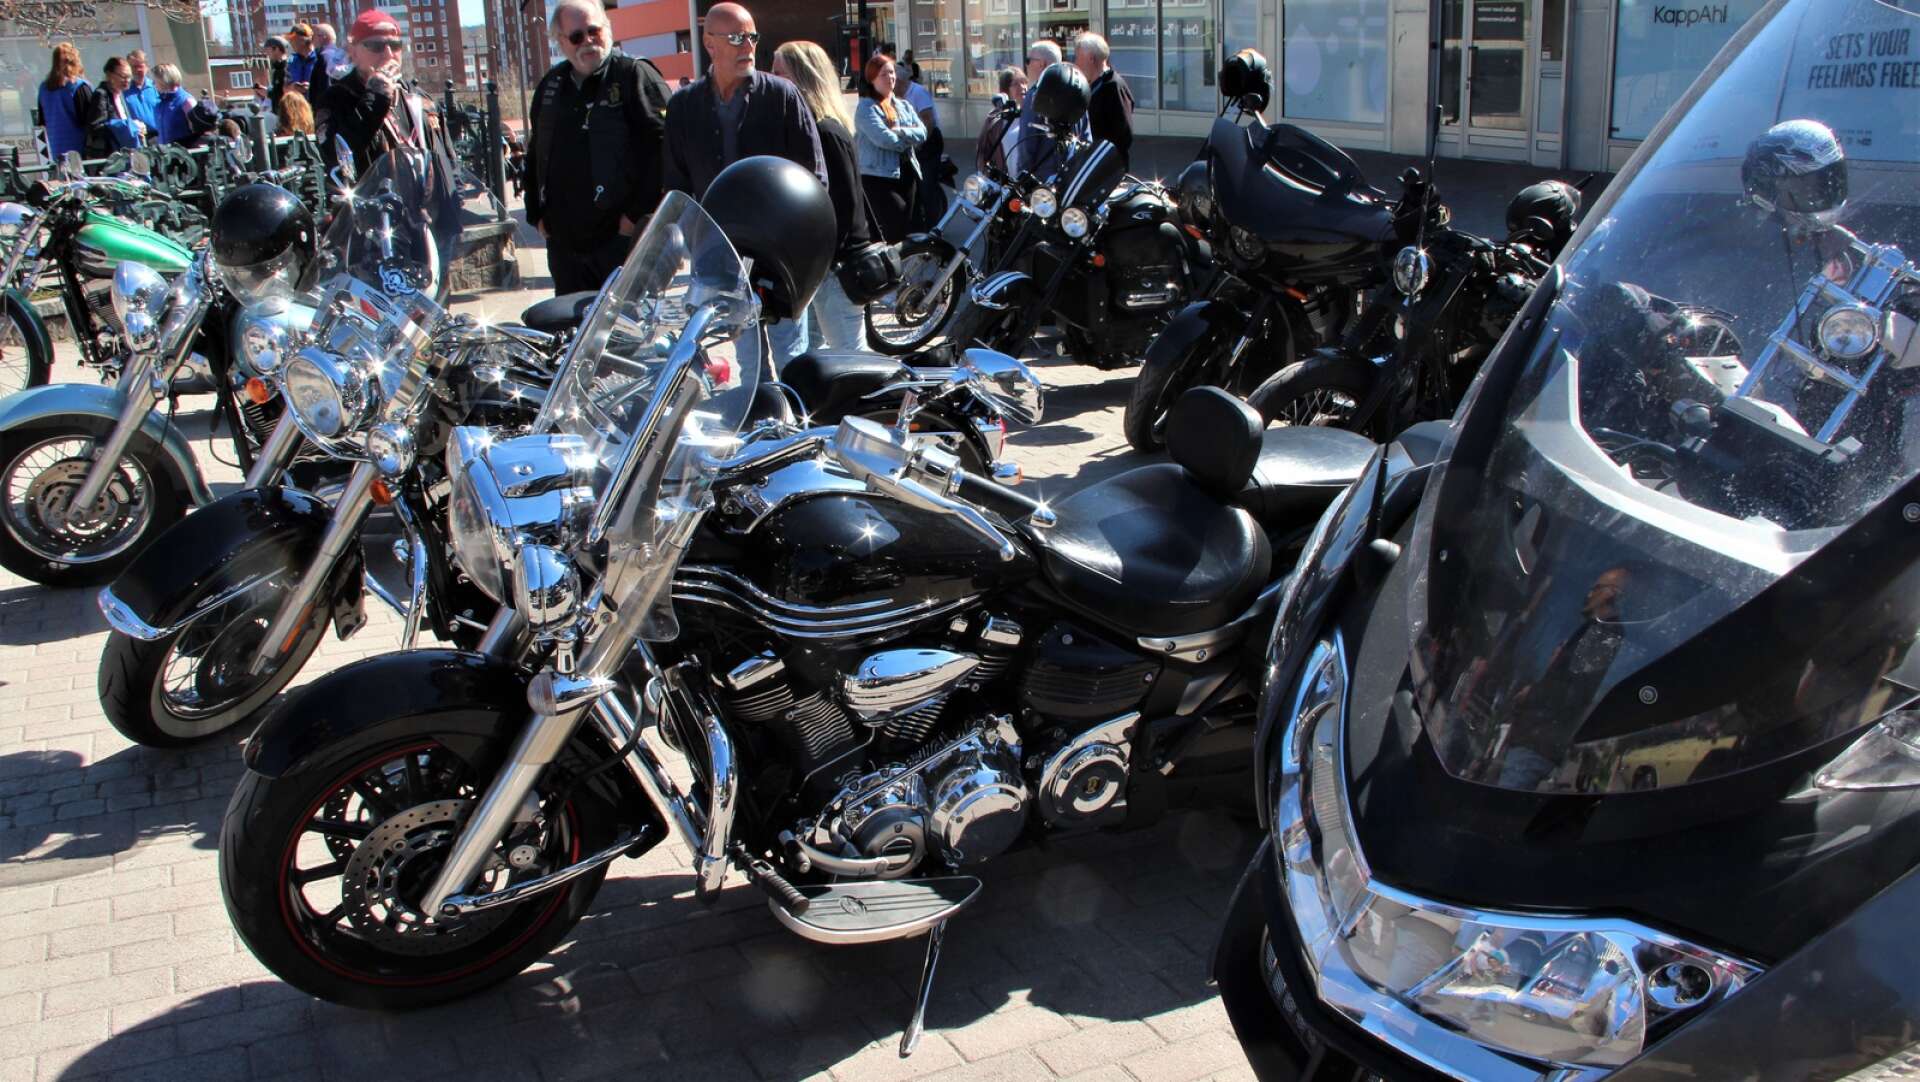 Även motorcyklar glänste i solen denna dag.